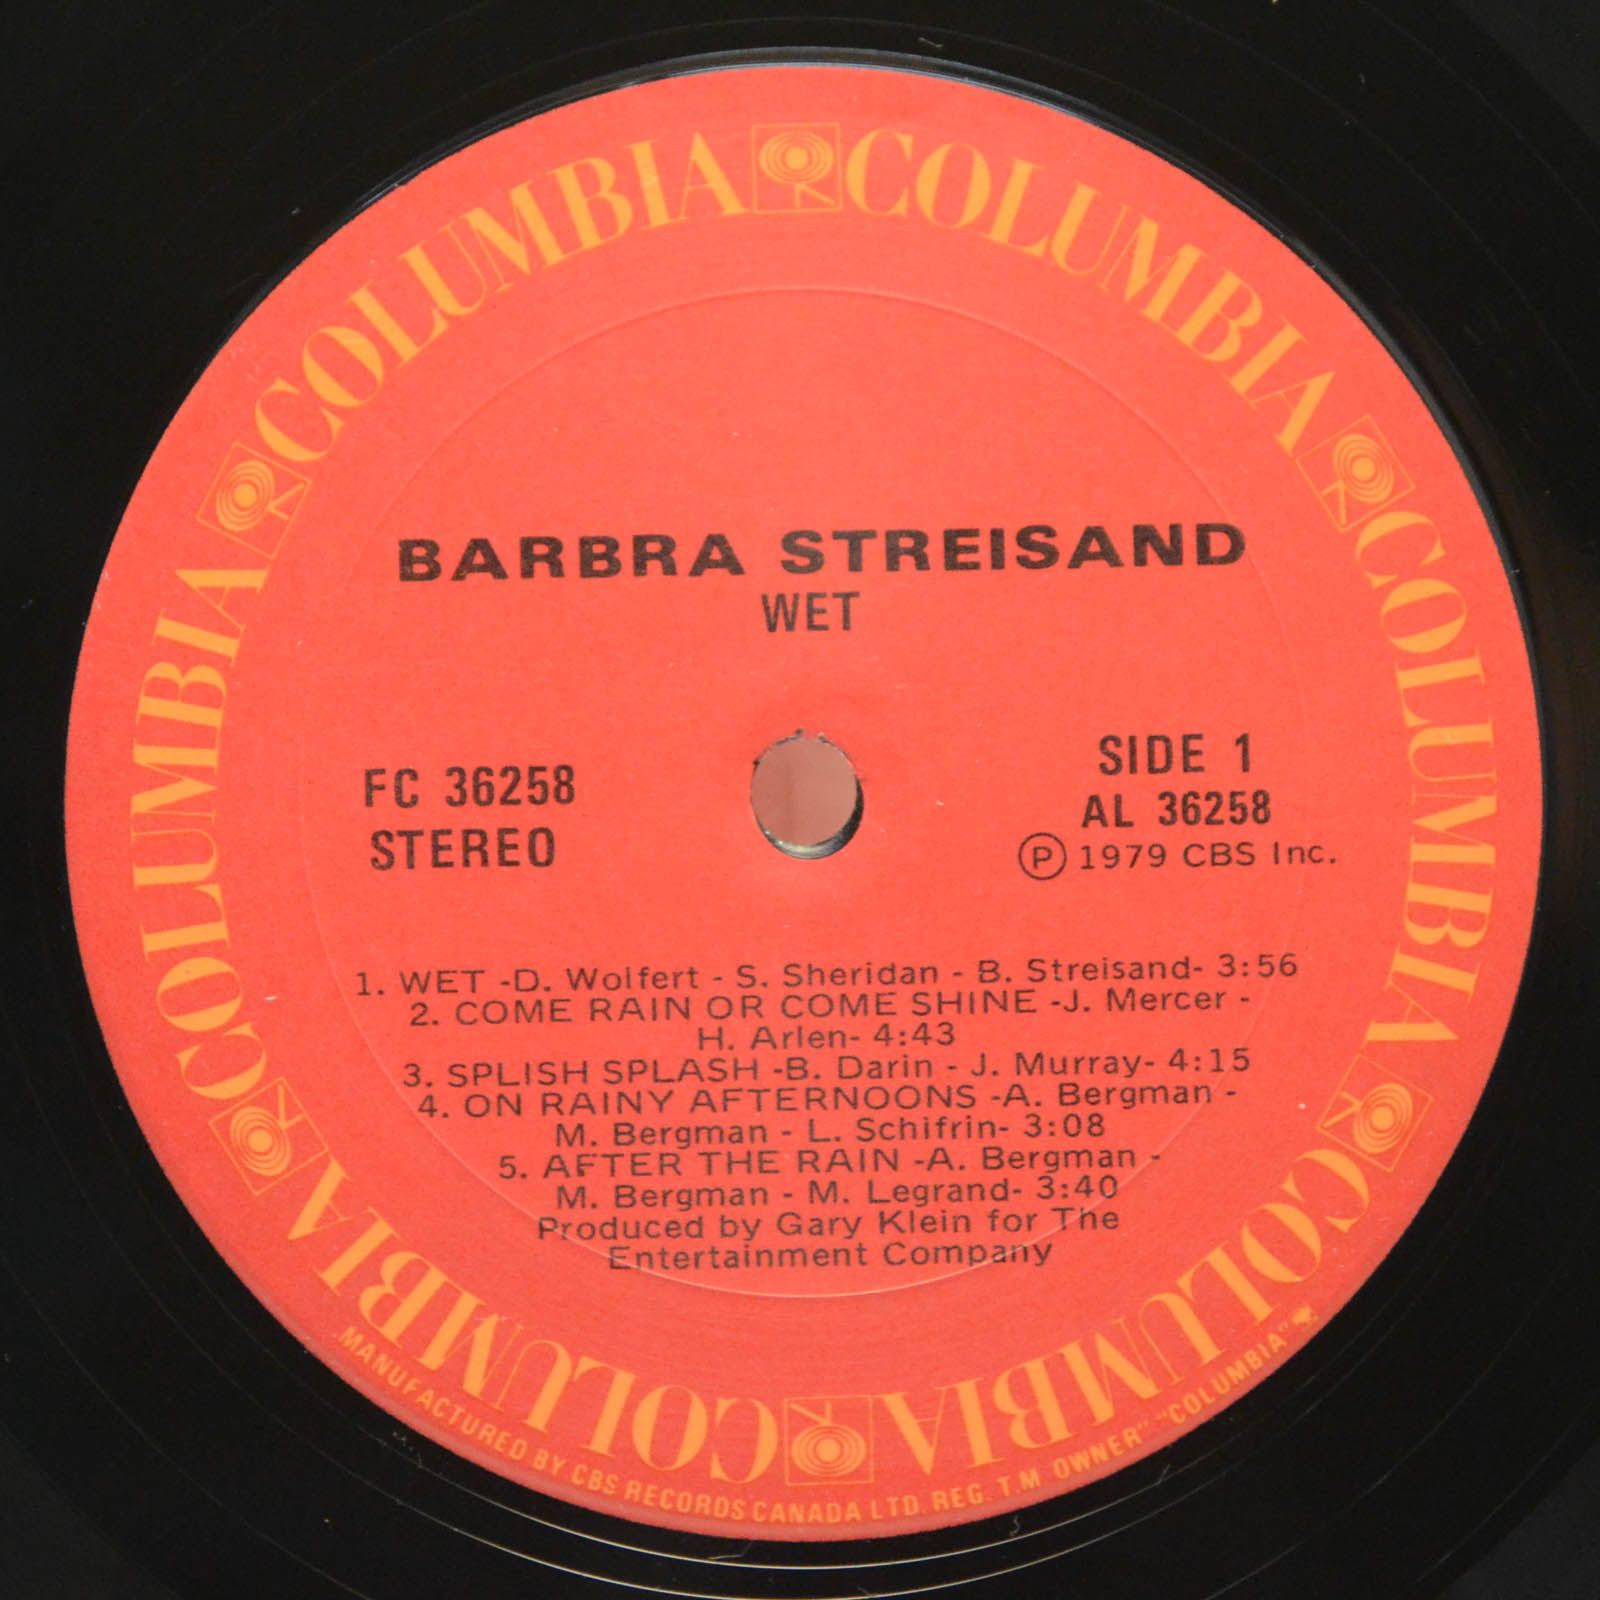 Barbra Streisand — Wet, 1979